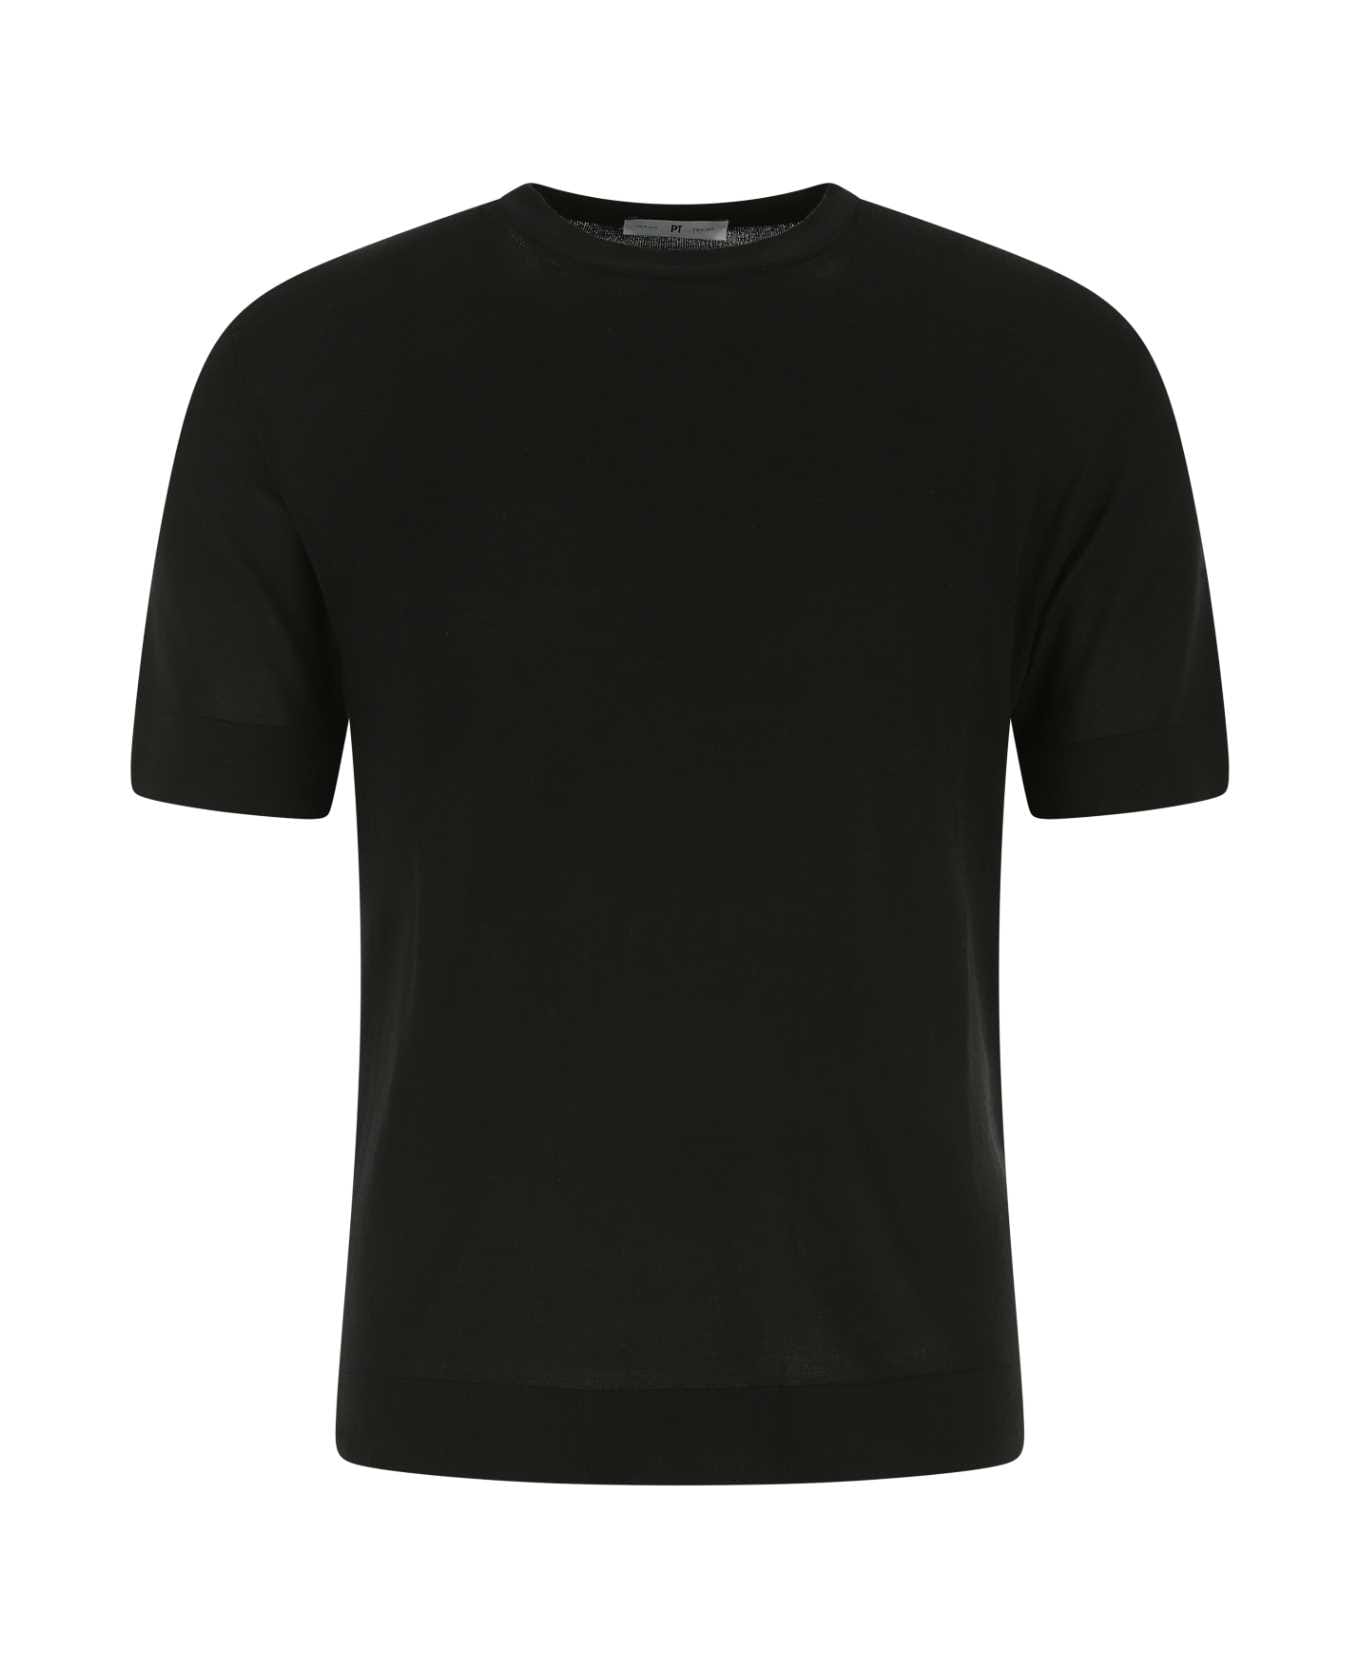 PT01 Black Cotton Blend T-shirt - 0990